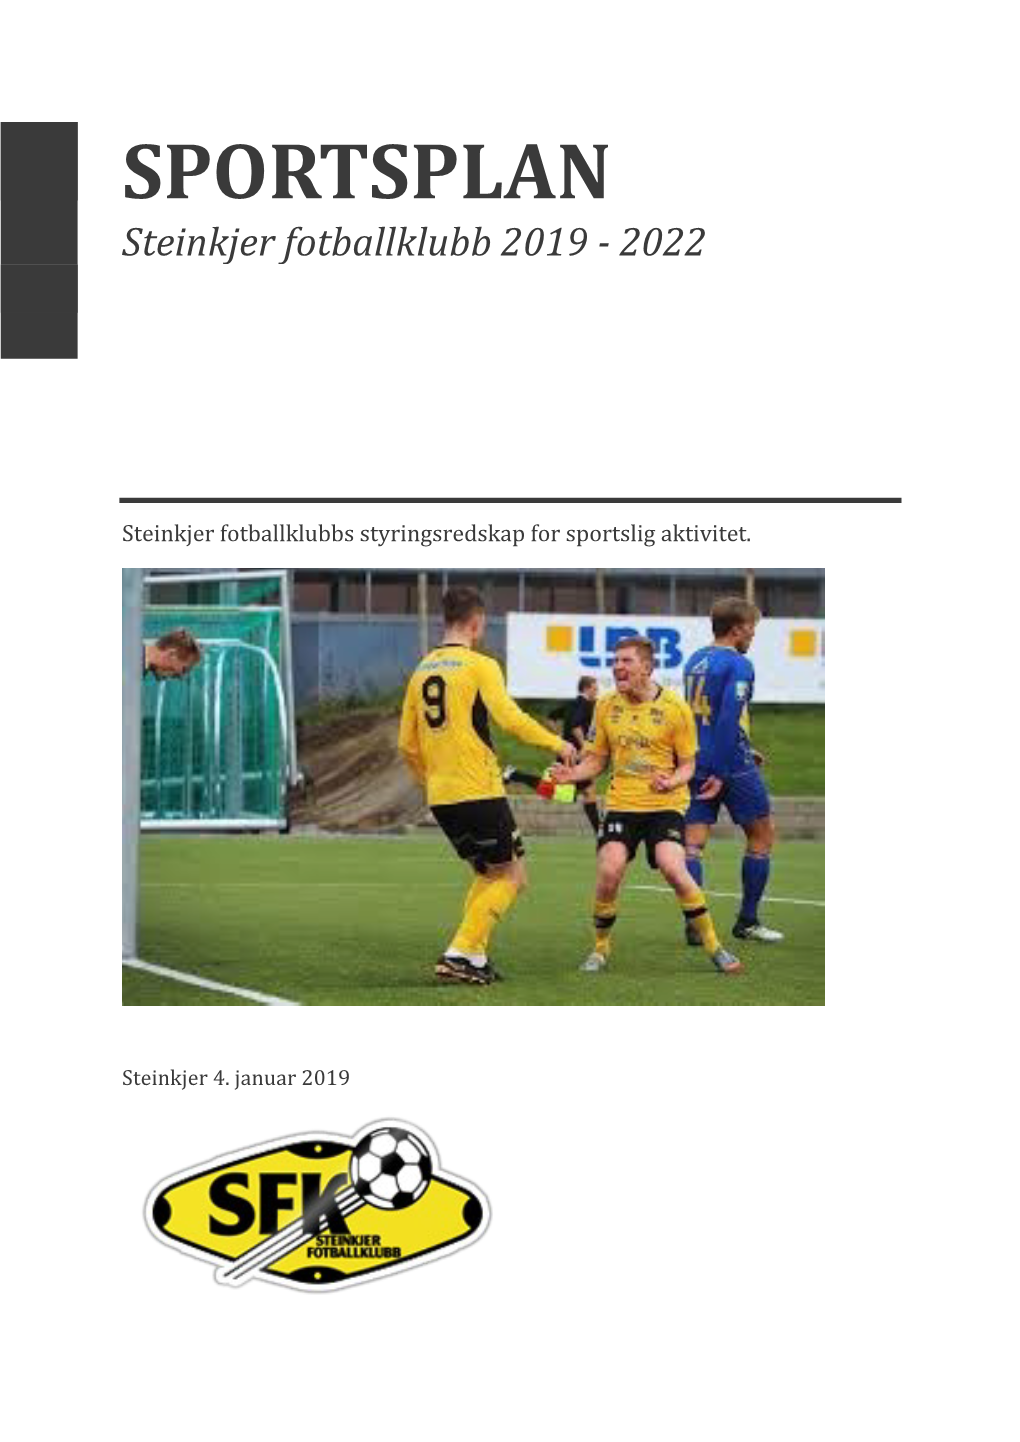 SPORTSPLAN Steinkjer Fotballklubb 2019 - 2022